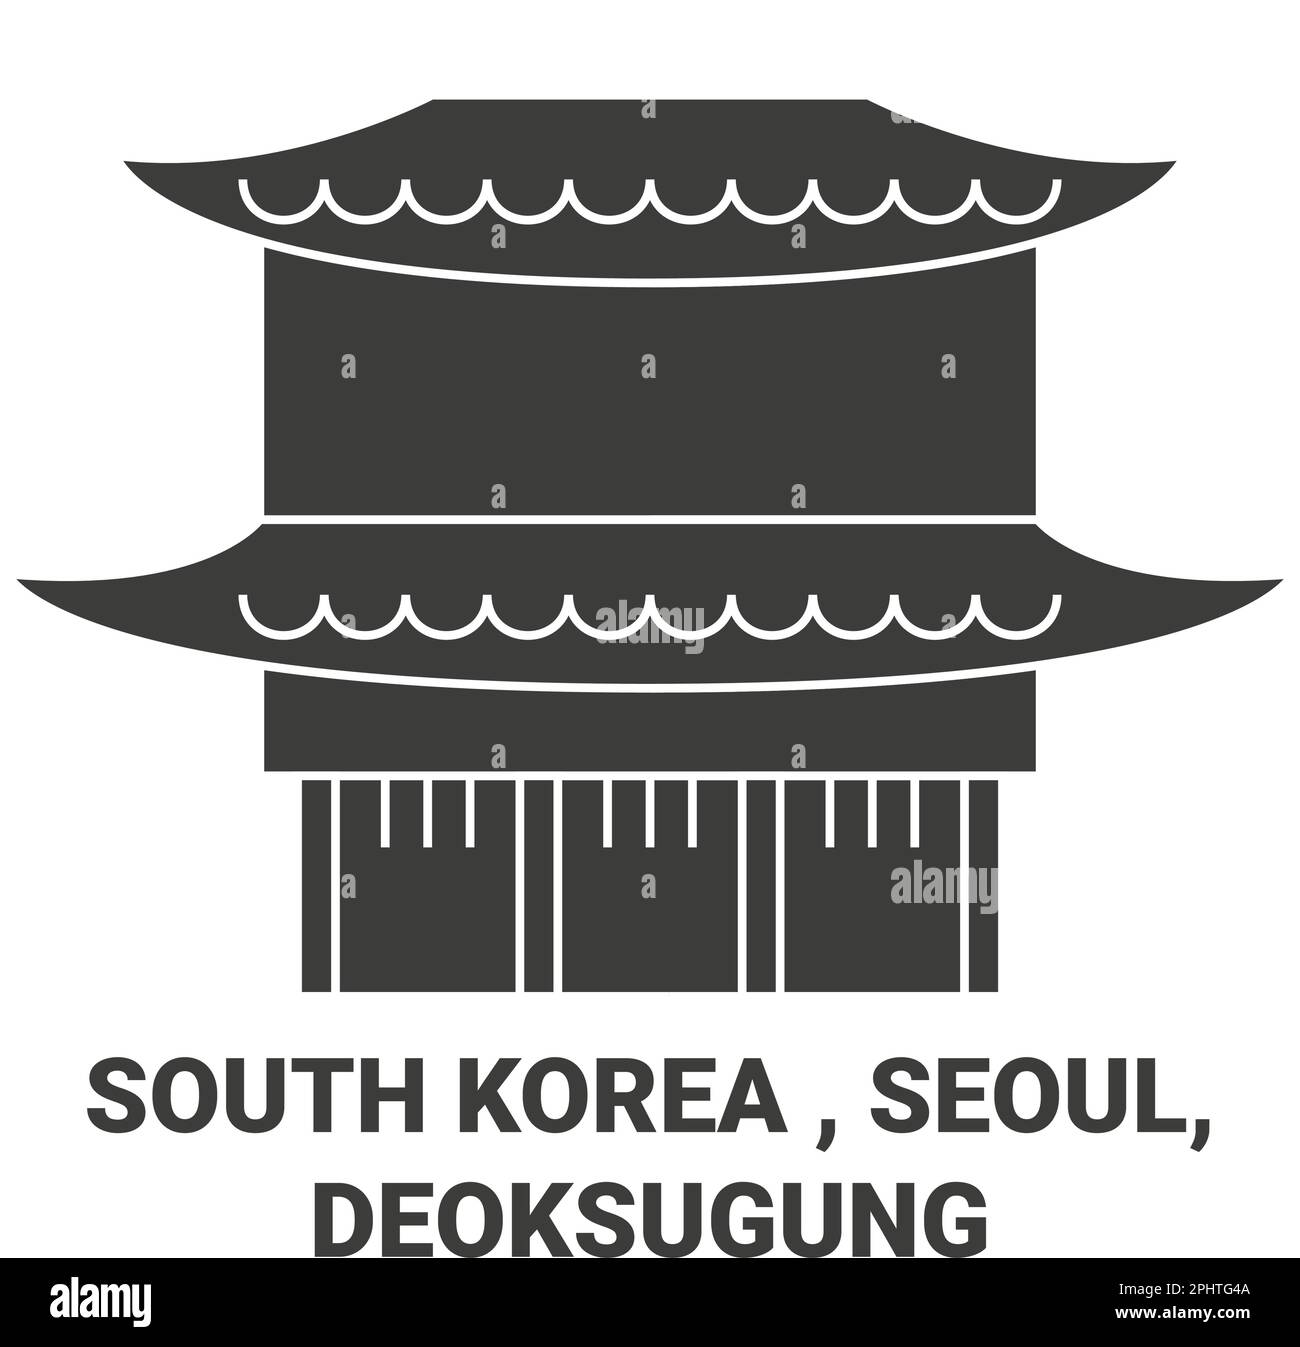 République de Corée, Séoul, Deoksugung Voyage illustration du vecteur de repère Illustration de Vecteur